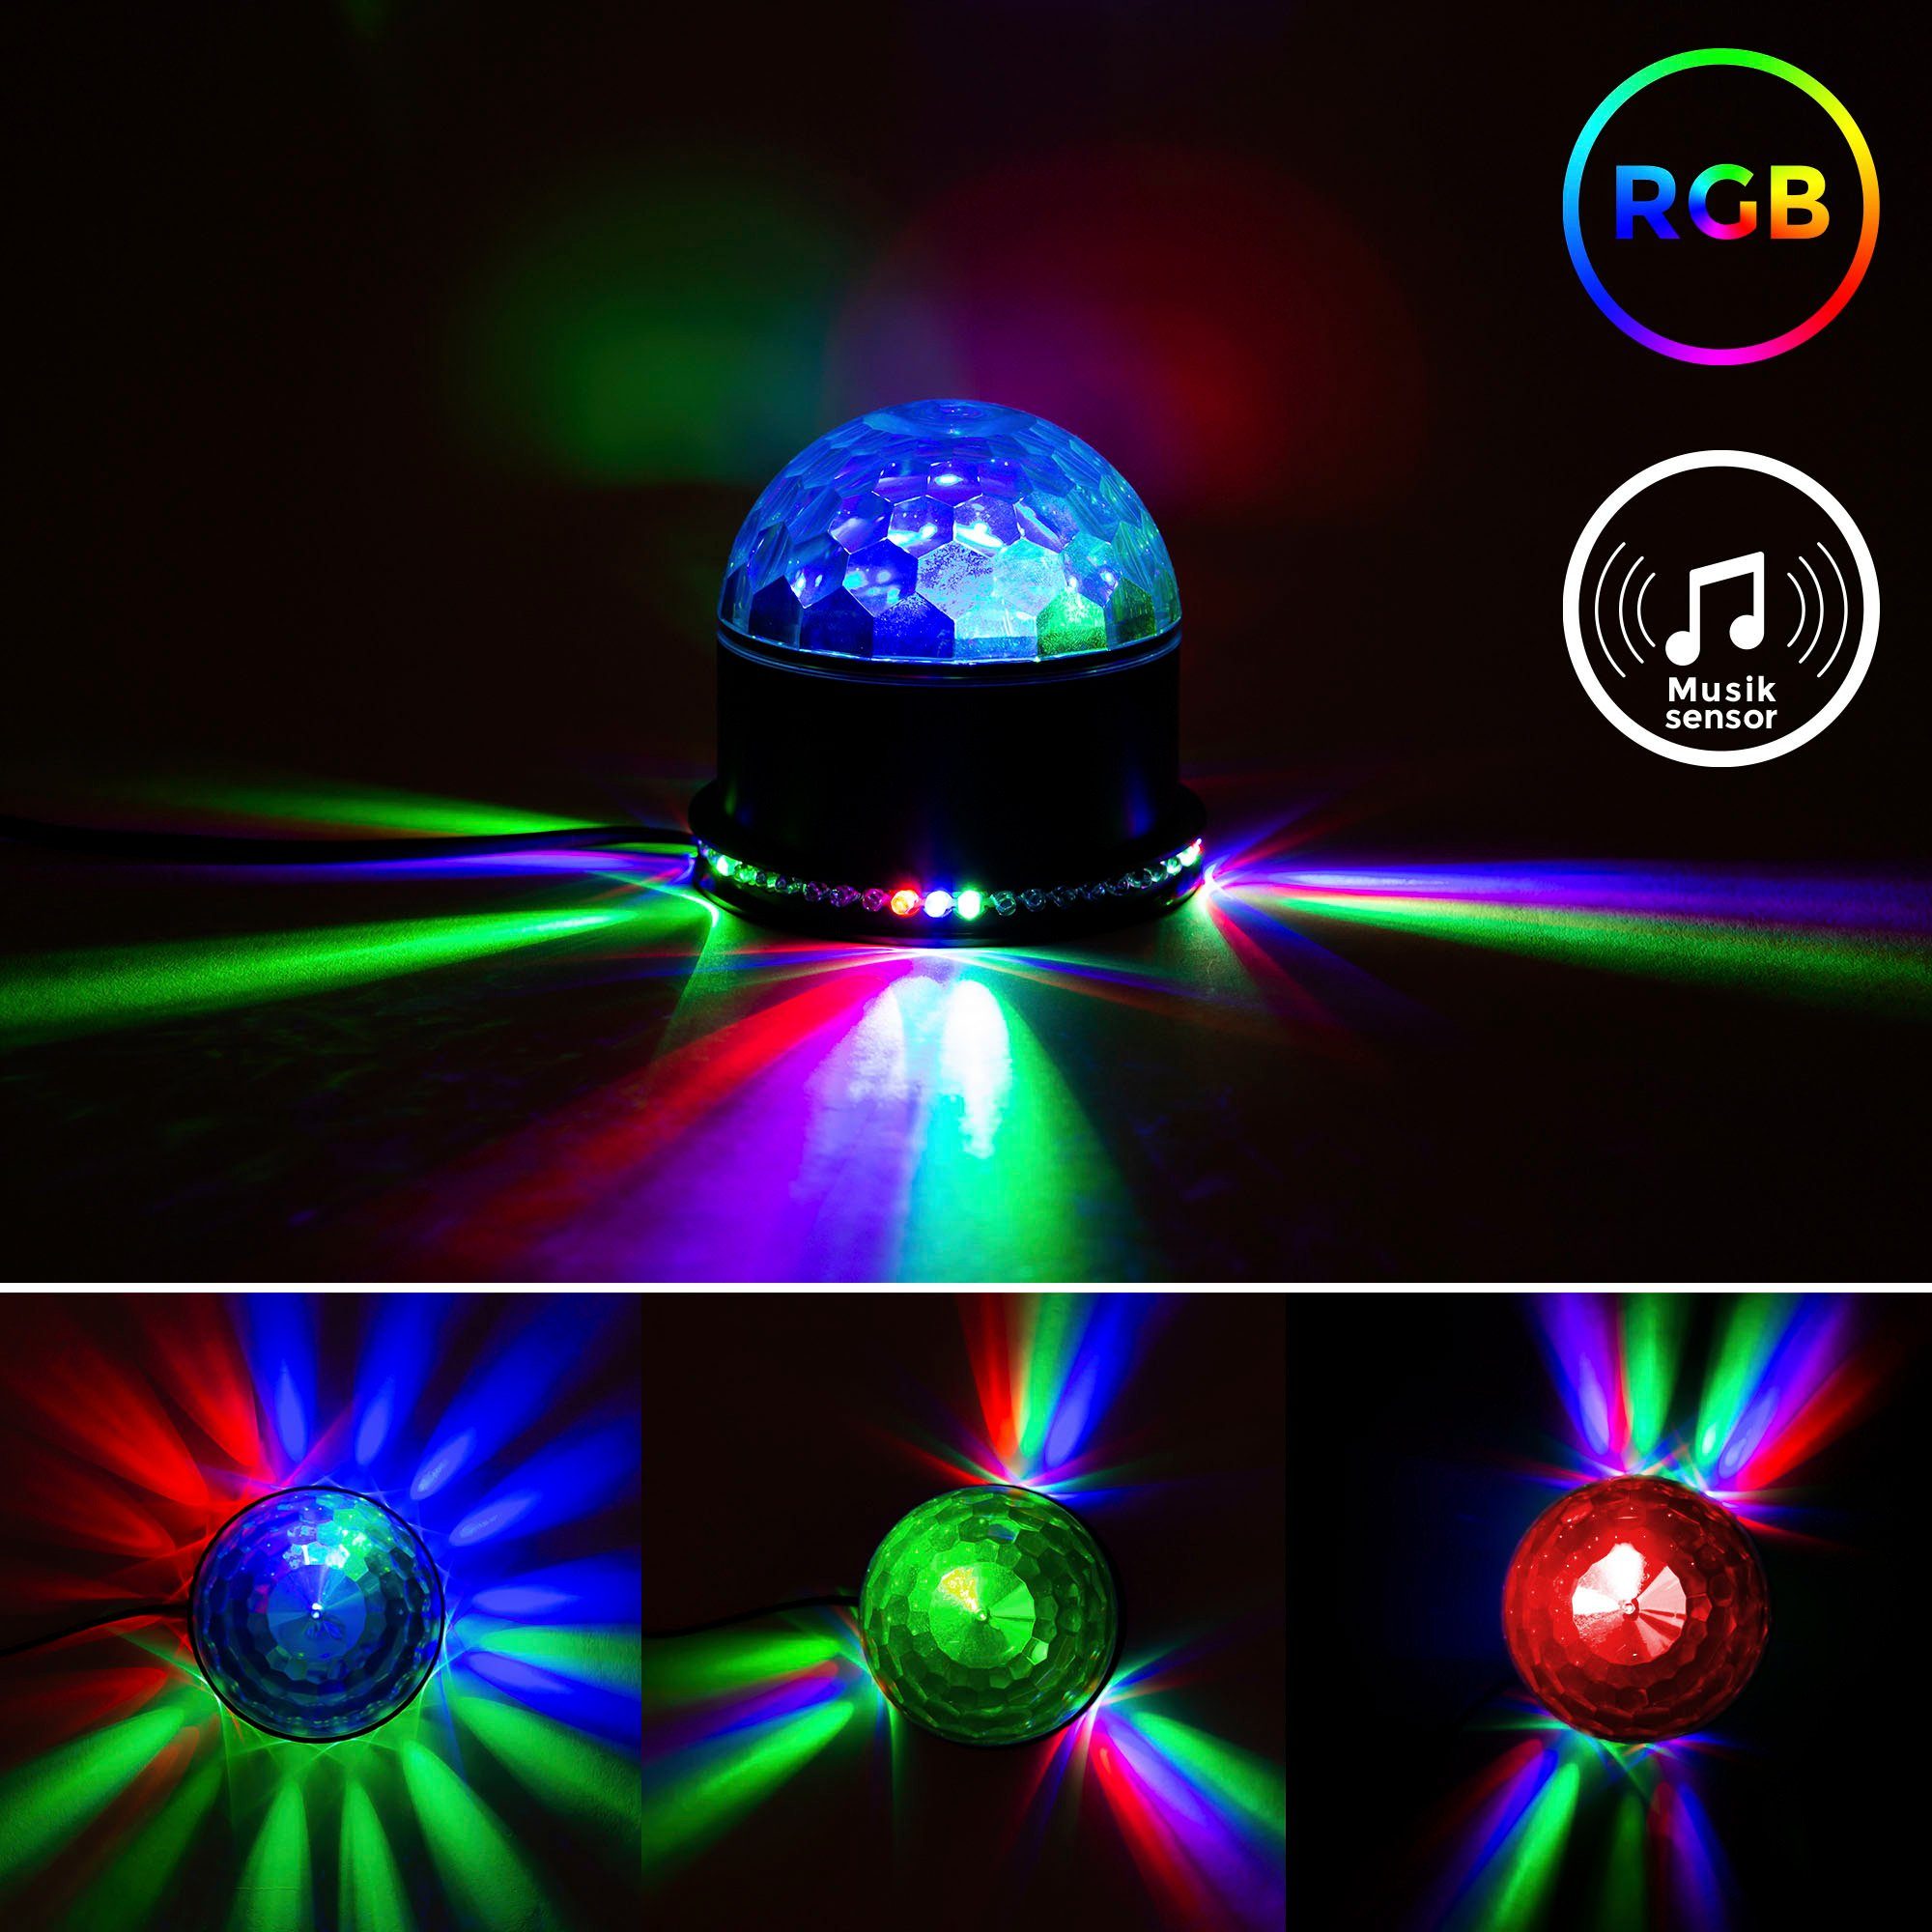 LED mit integriert, BK_GD1327 fest Tischlampe Discolicht, RGB, Partylicht, LED Partyleuchte, Musiksensor, Motivstrahler Farbwechsel, B.K.Licht RGB, LED RGB